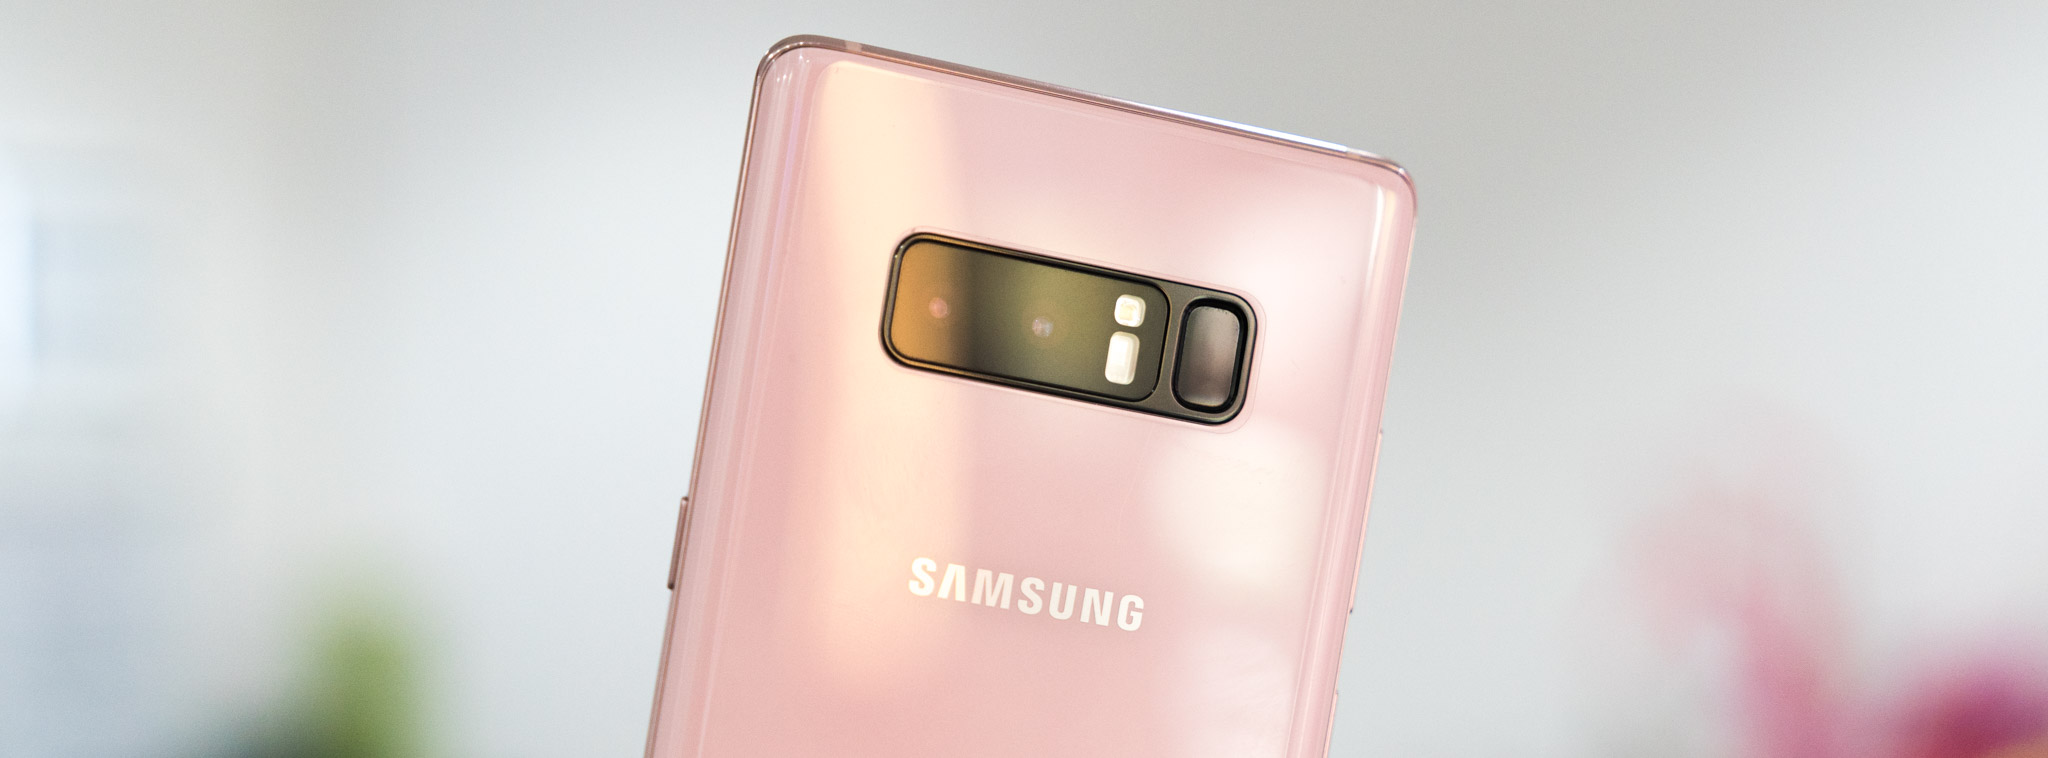 Trên tay Samsung Galaxy Note 8 hồng: hàng Đài Loan, giá 16.9 triệu đồng